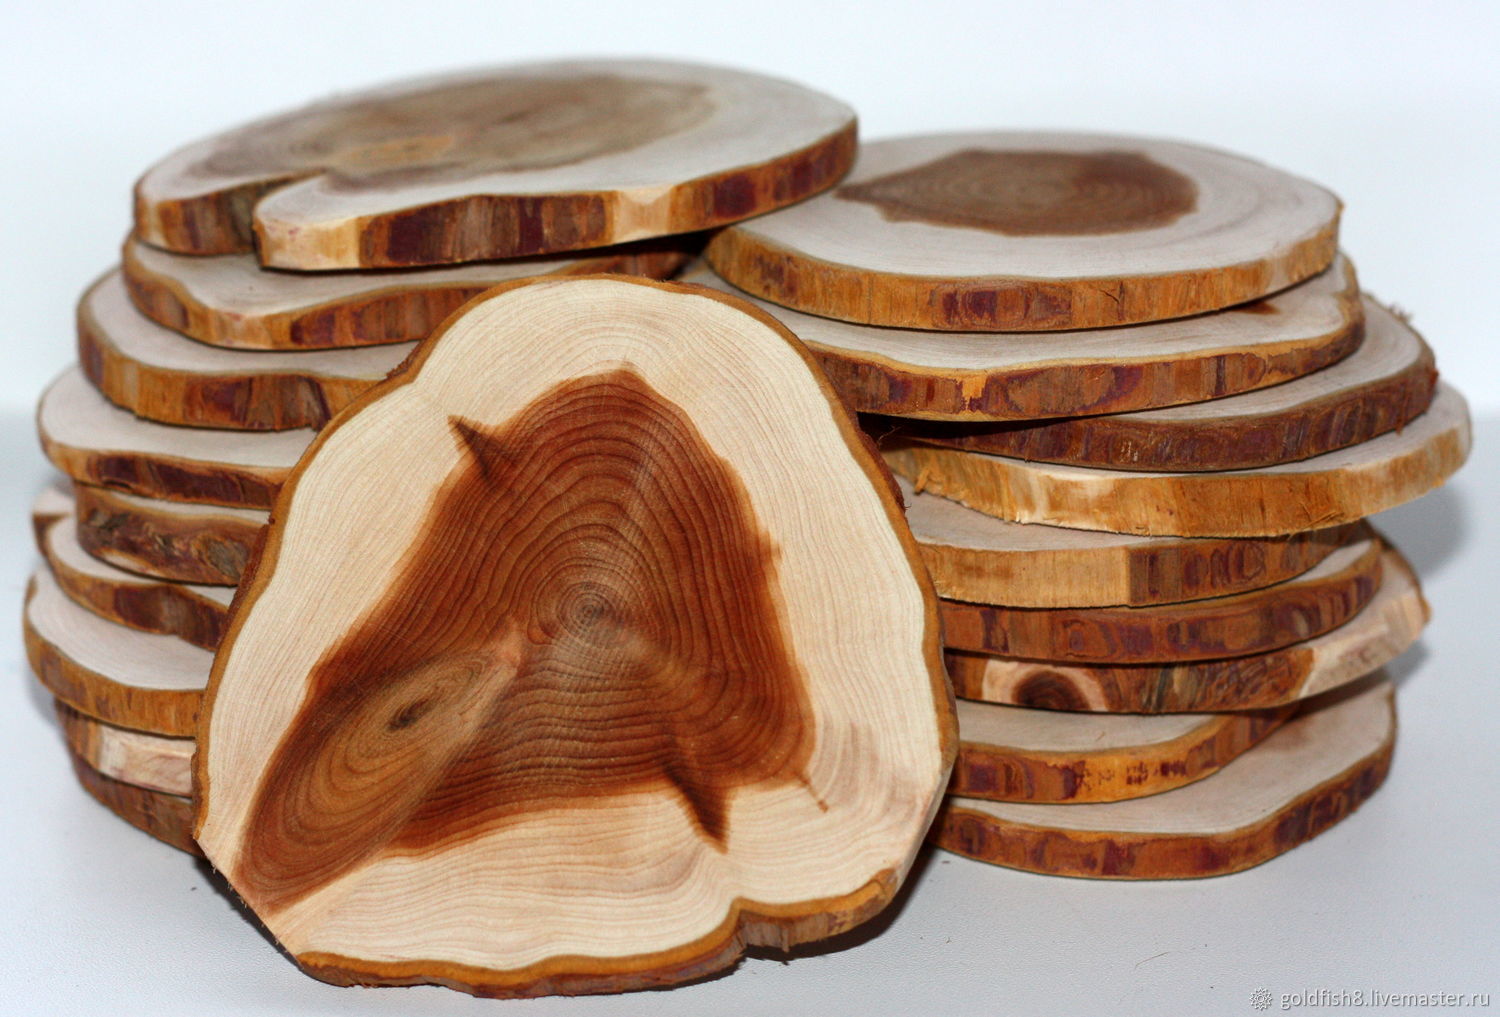 Изделия из дуба своими руками: 100 самых крутых изделий из дерева с выставки Wood Works — Roomble.com